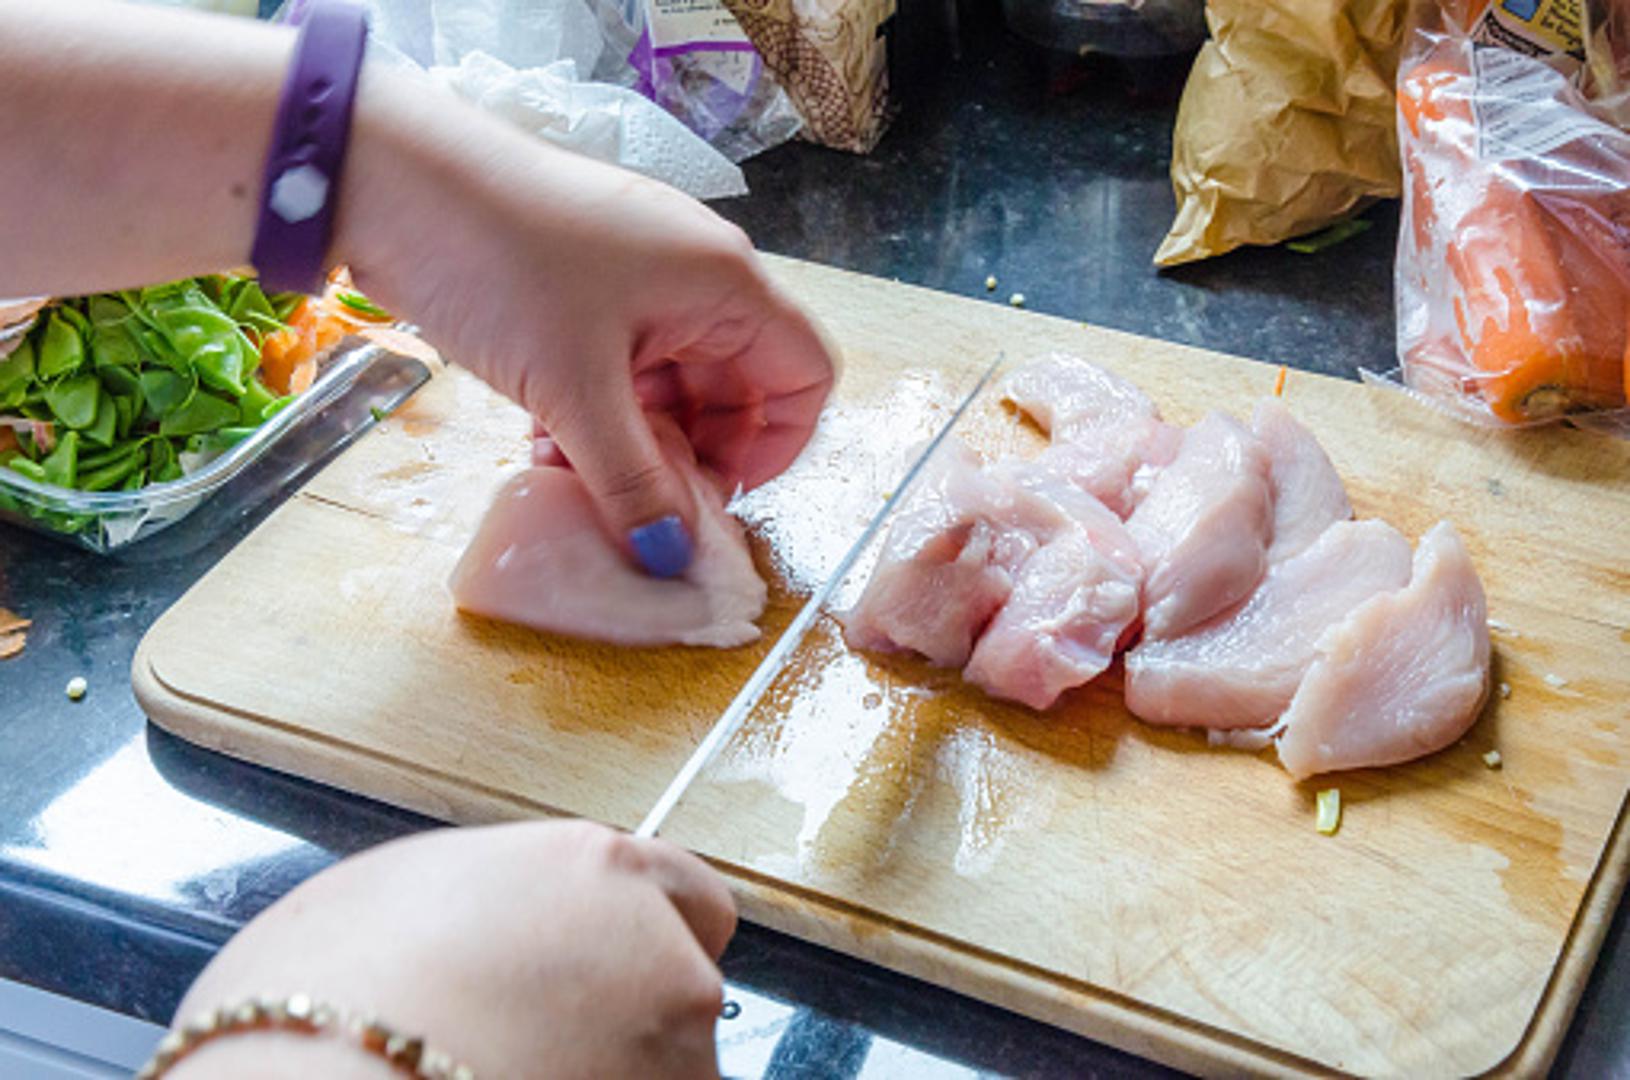 Nemojte se koristiti daskom za rezanje nakon što ste na njoj rezali sirovu piletinu ako je nakon toga niste oprali. Isto vrijedi i za nož ili vilicu. 